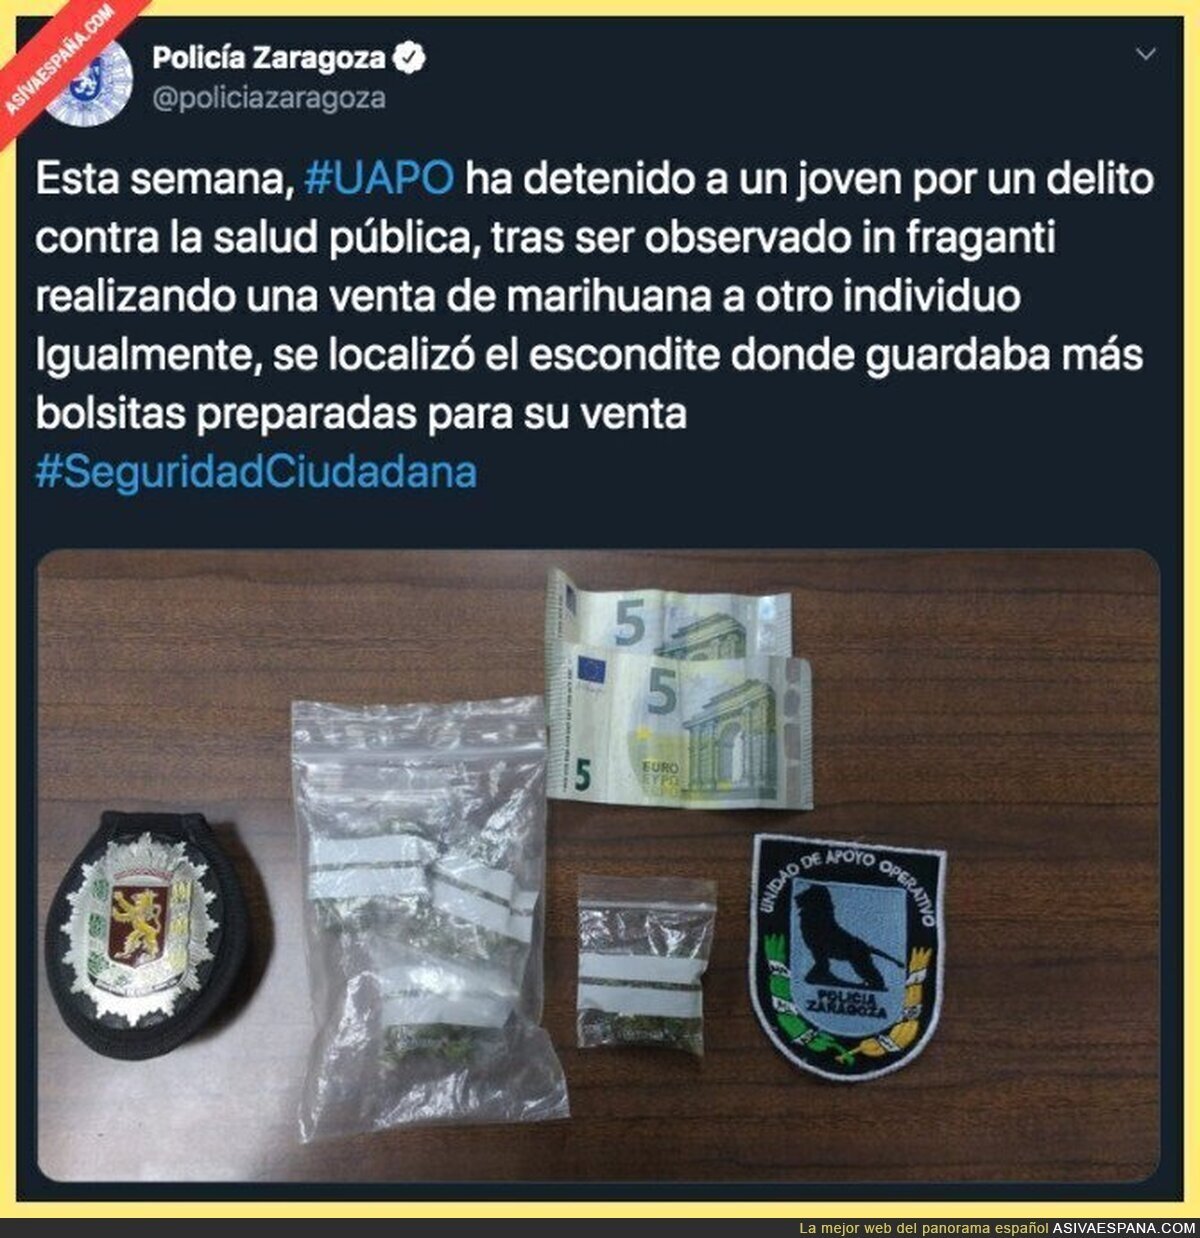 Gran trabajo de la Policía de Zaragoza